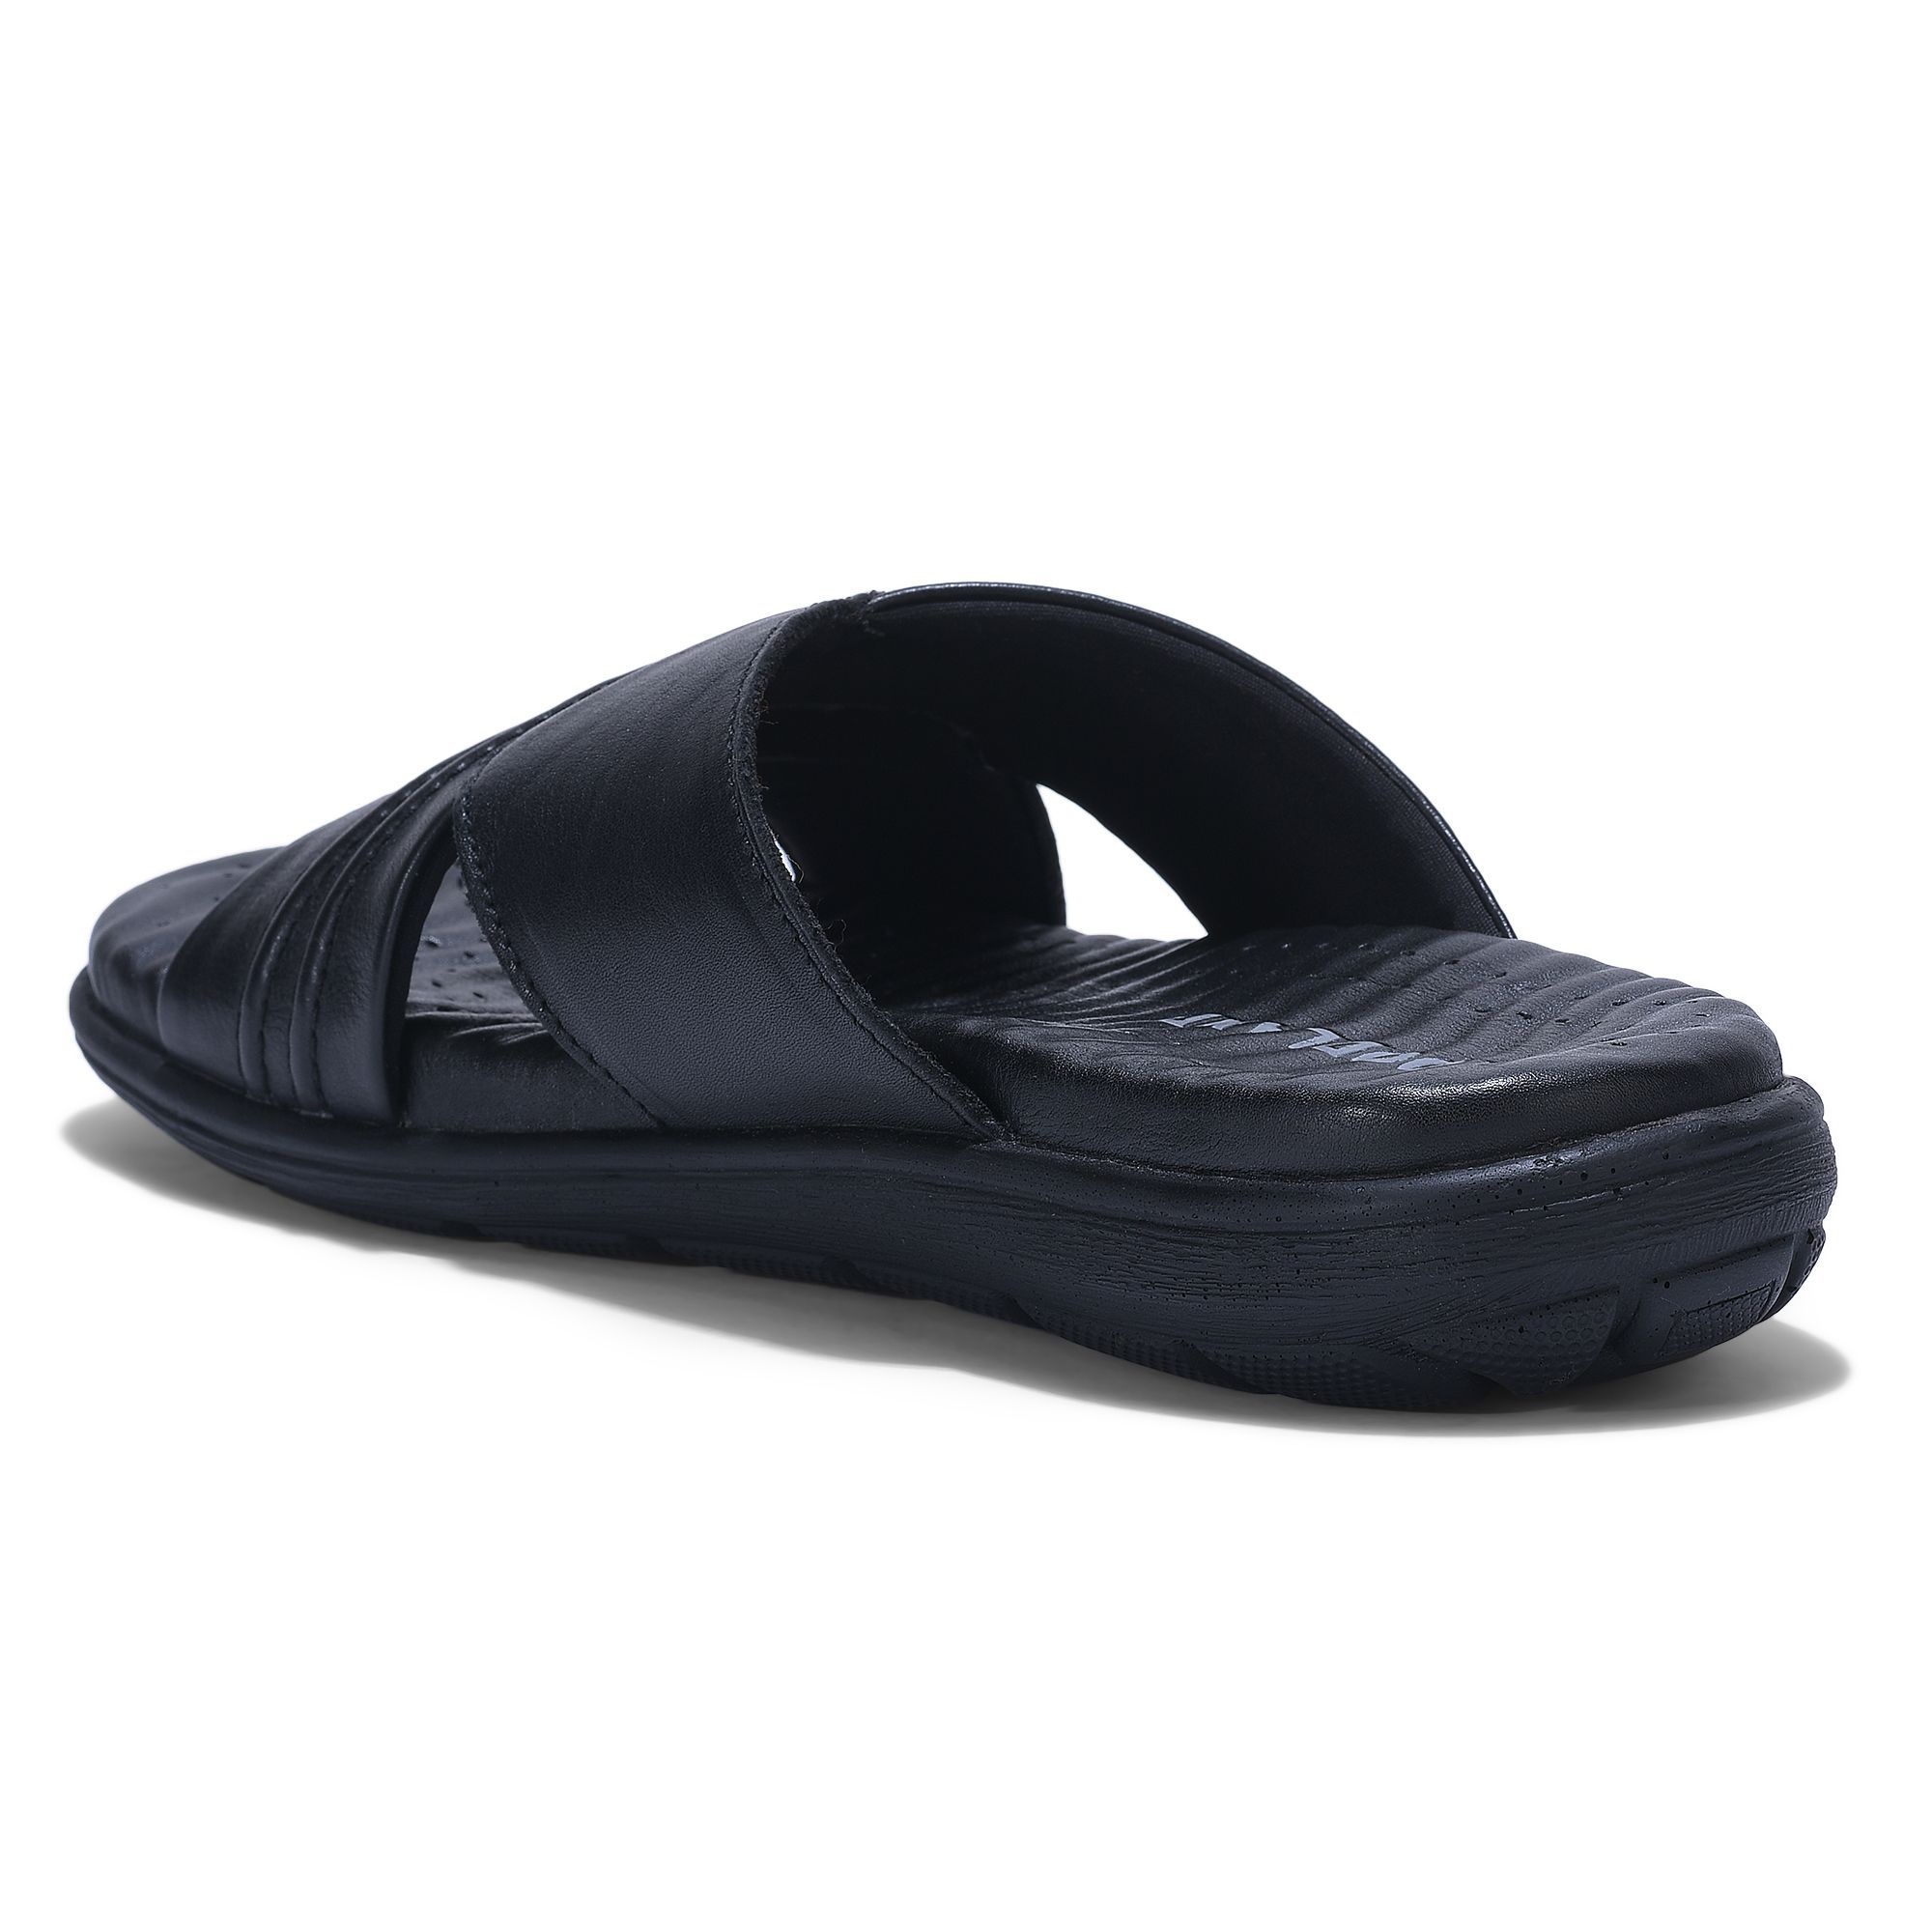 Black slipper for men